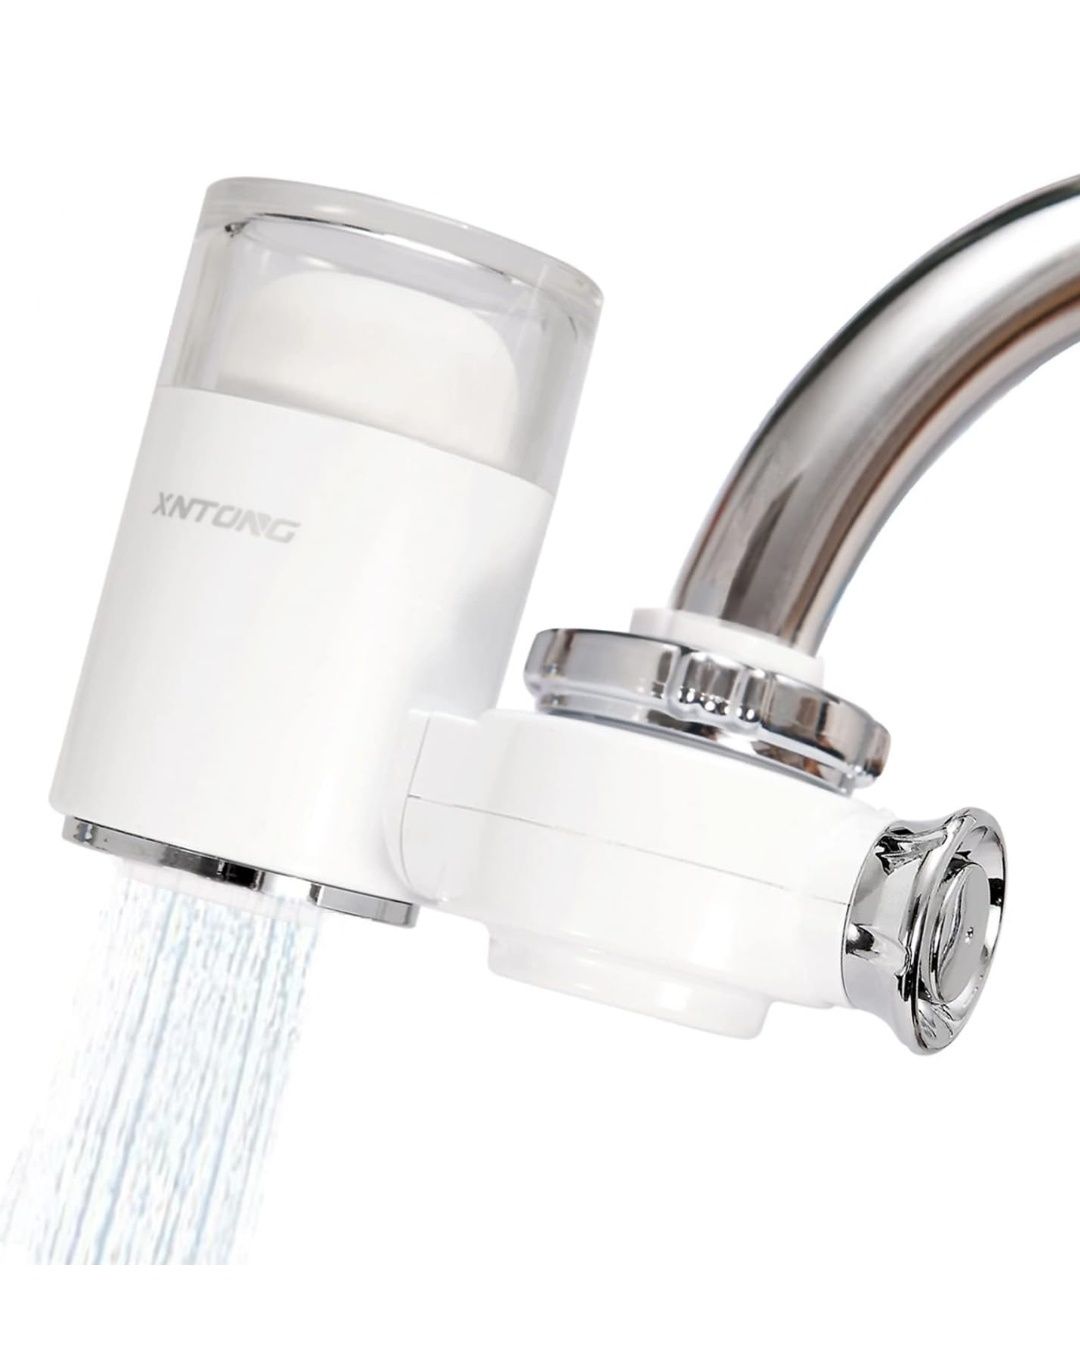 XNTONG - очищувач води для крана, очищувач водопровідної води з активо